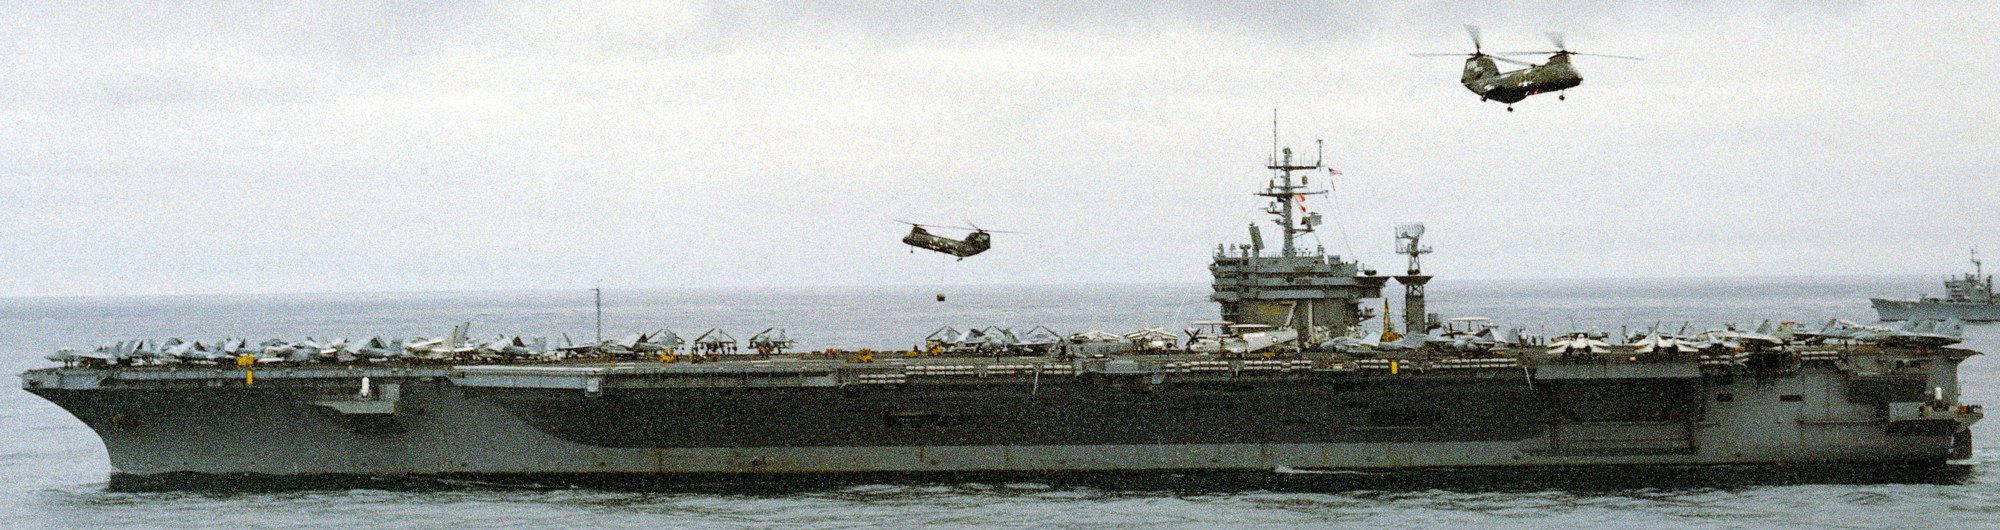 cvn-71 uss theodore roosevelt nimitz class aircraft carrier air wing cvw-8 exercise team work 1988 45